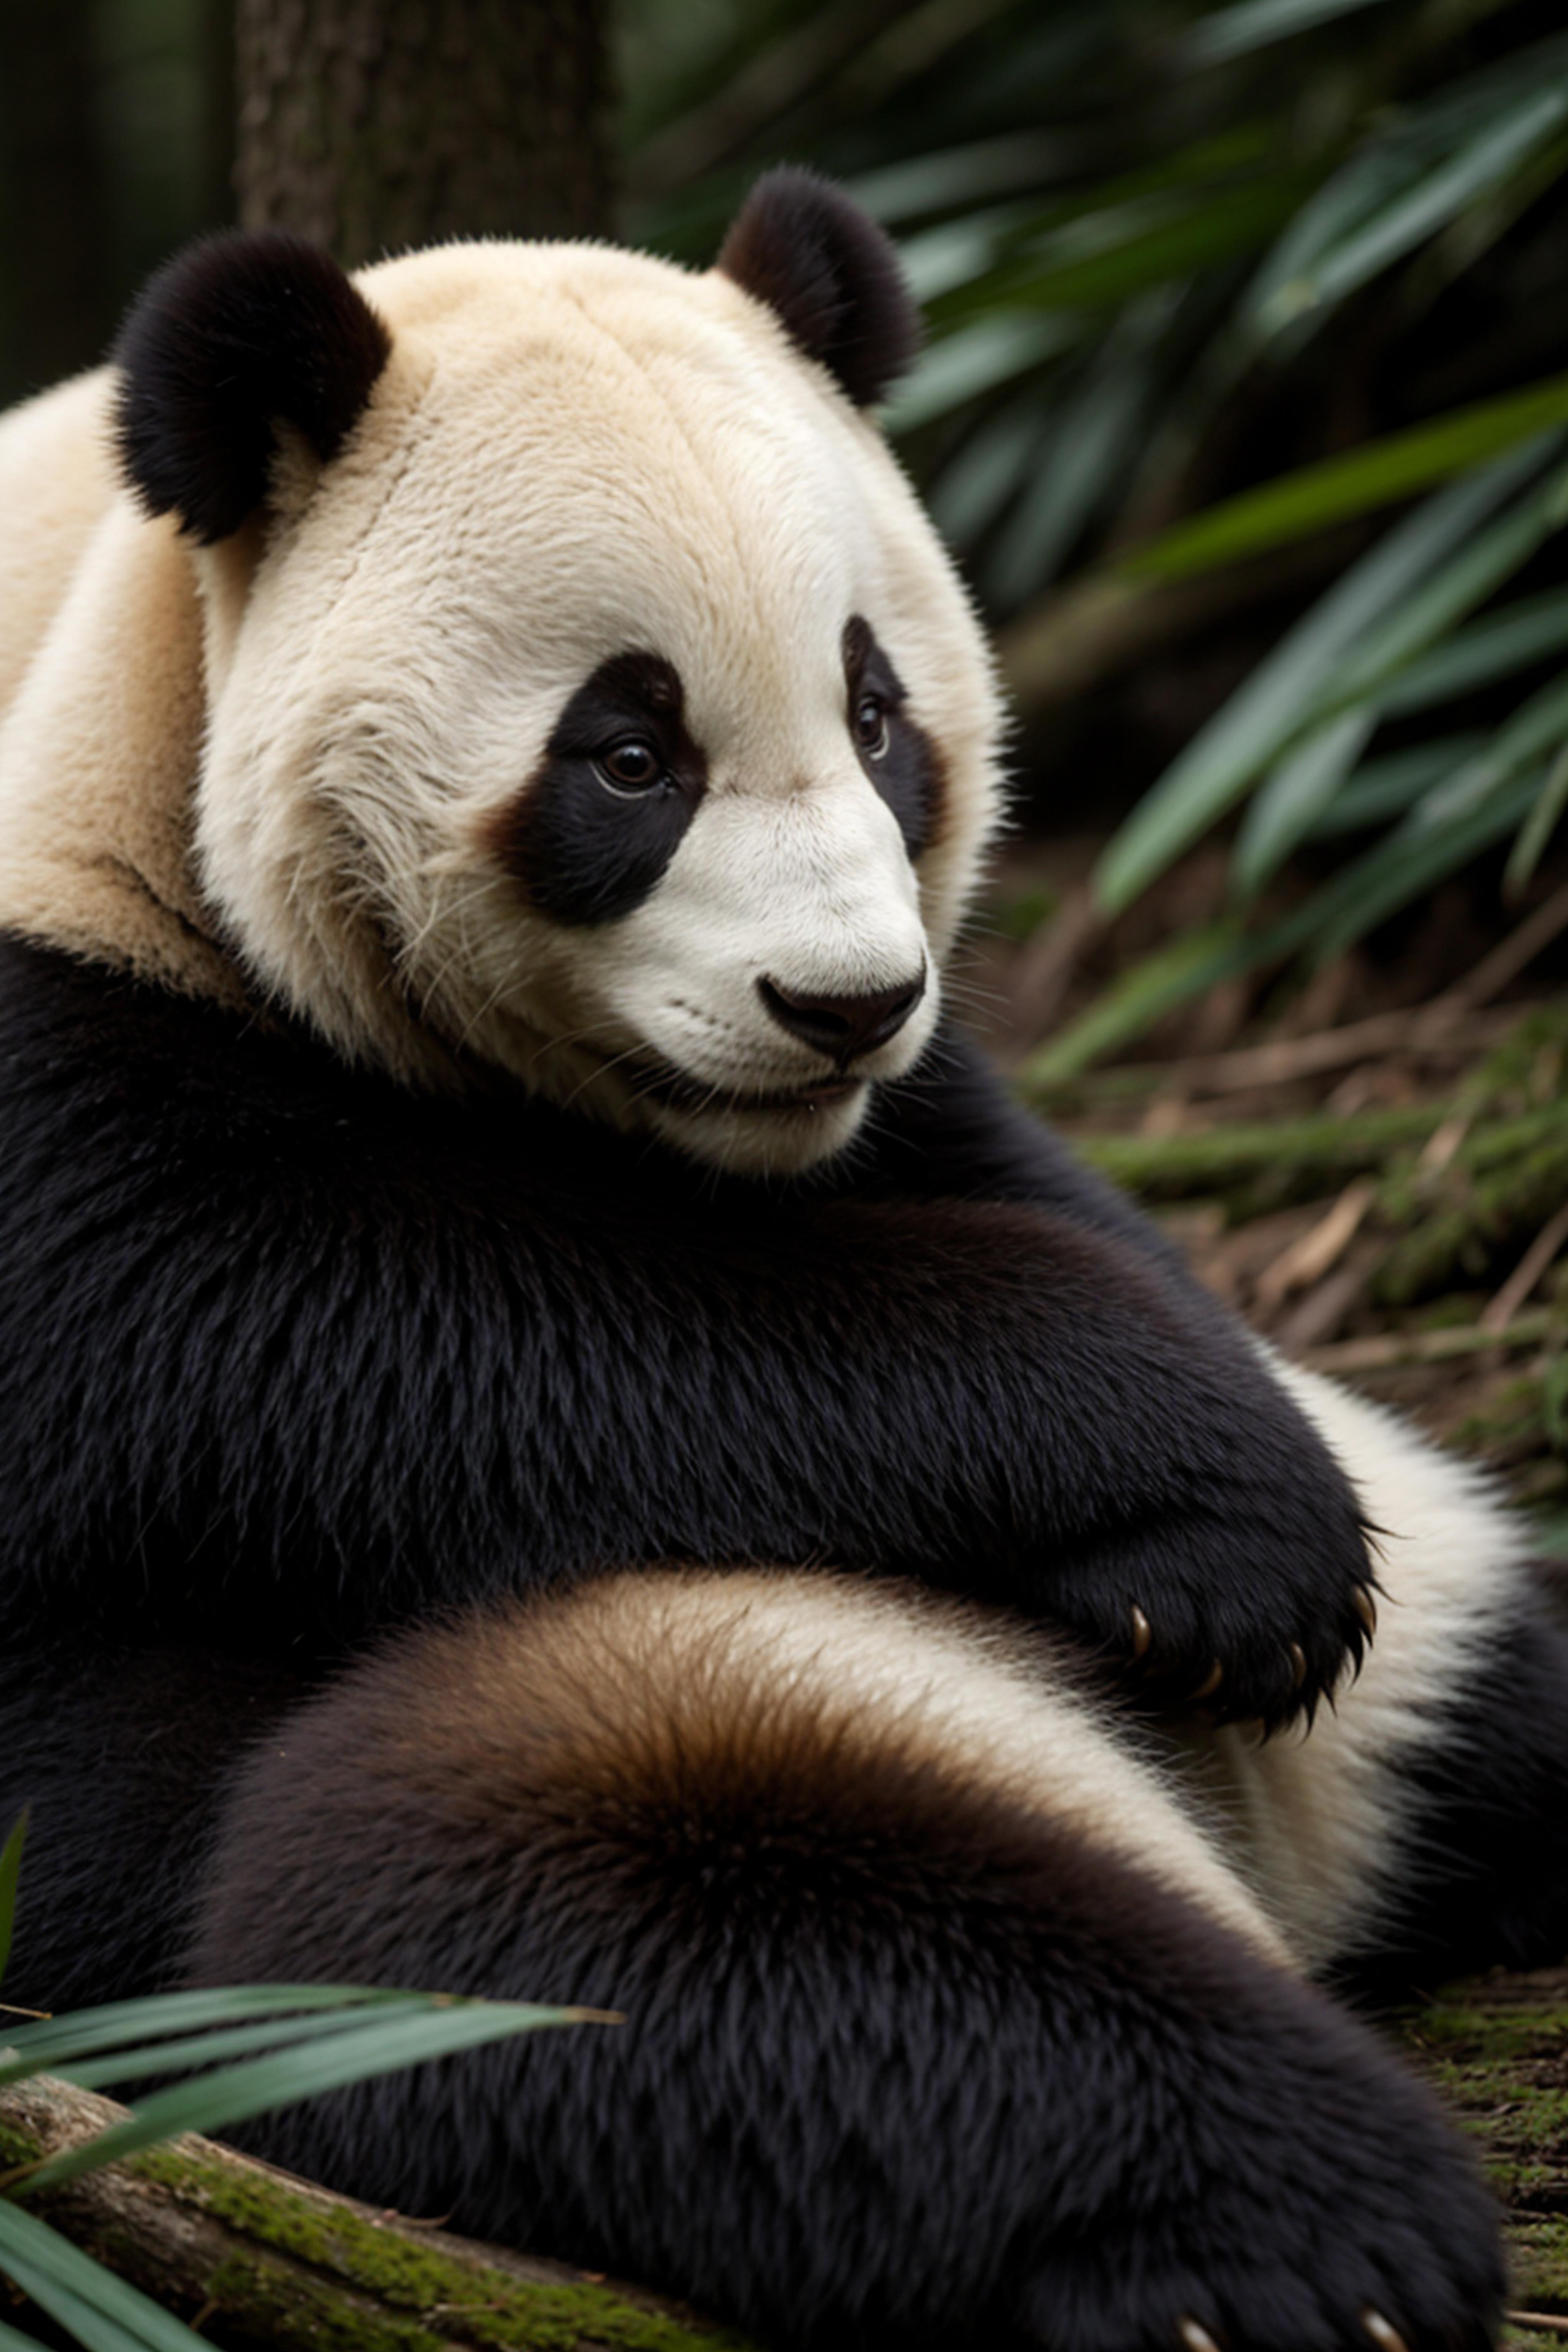 A young panda bear looking at the camera.